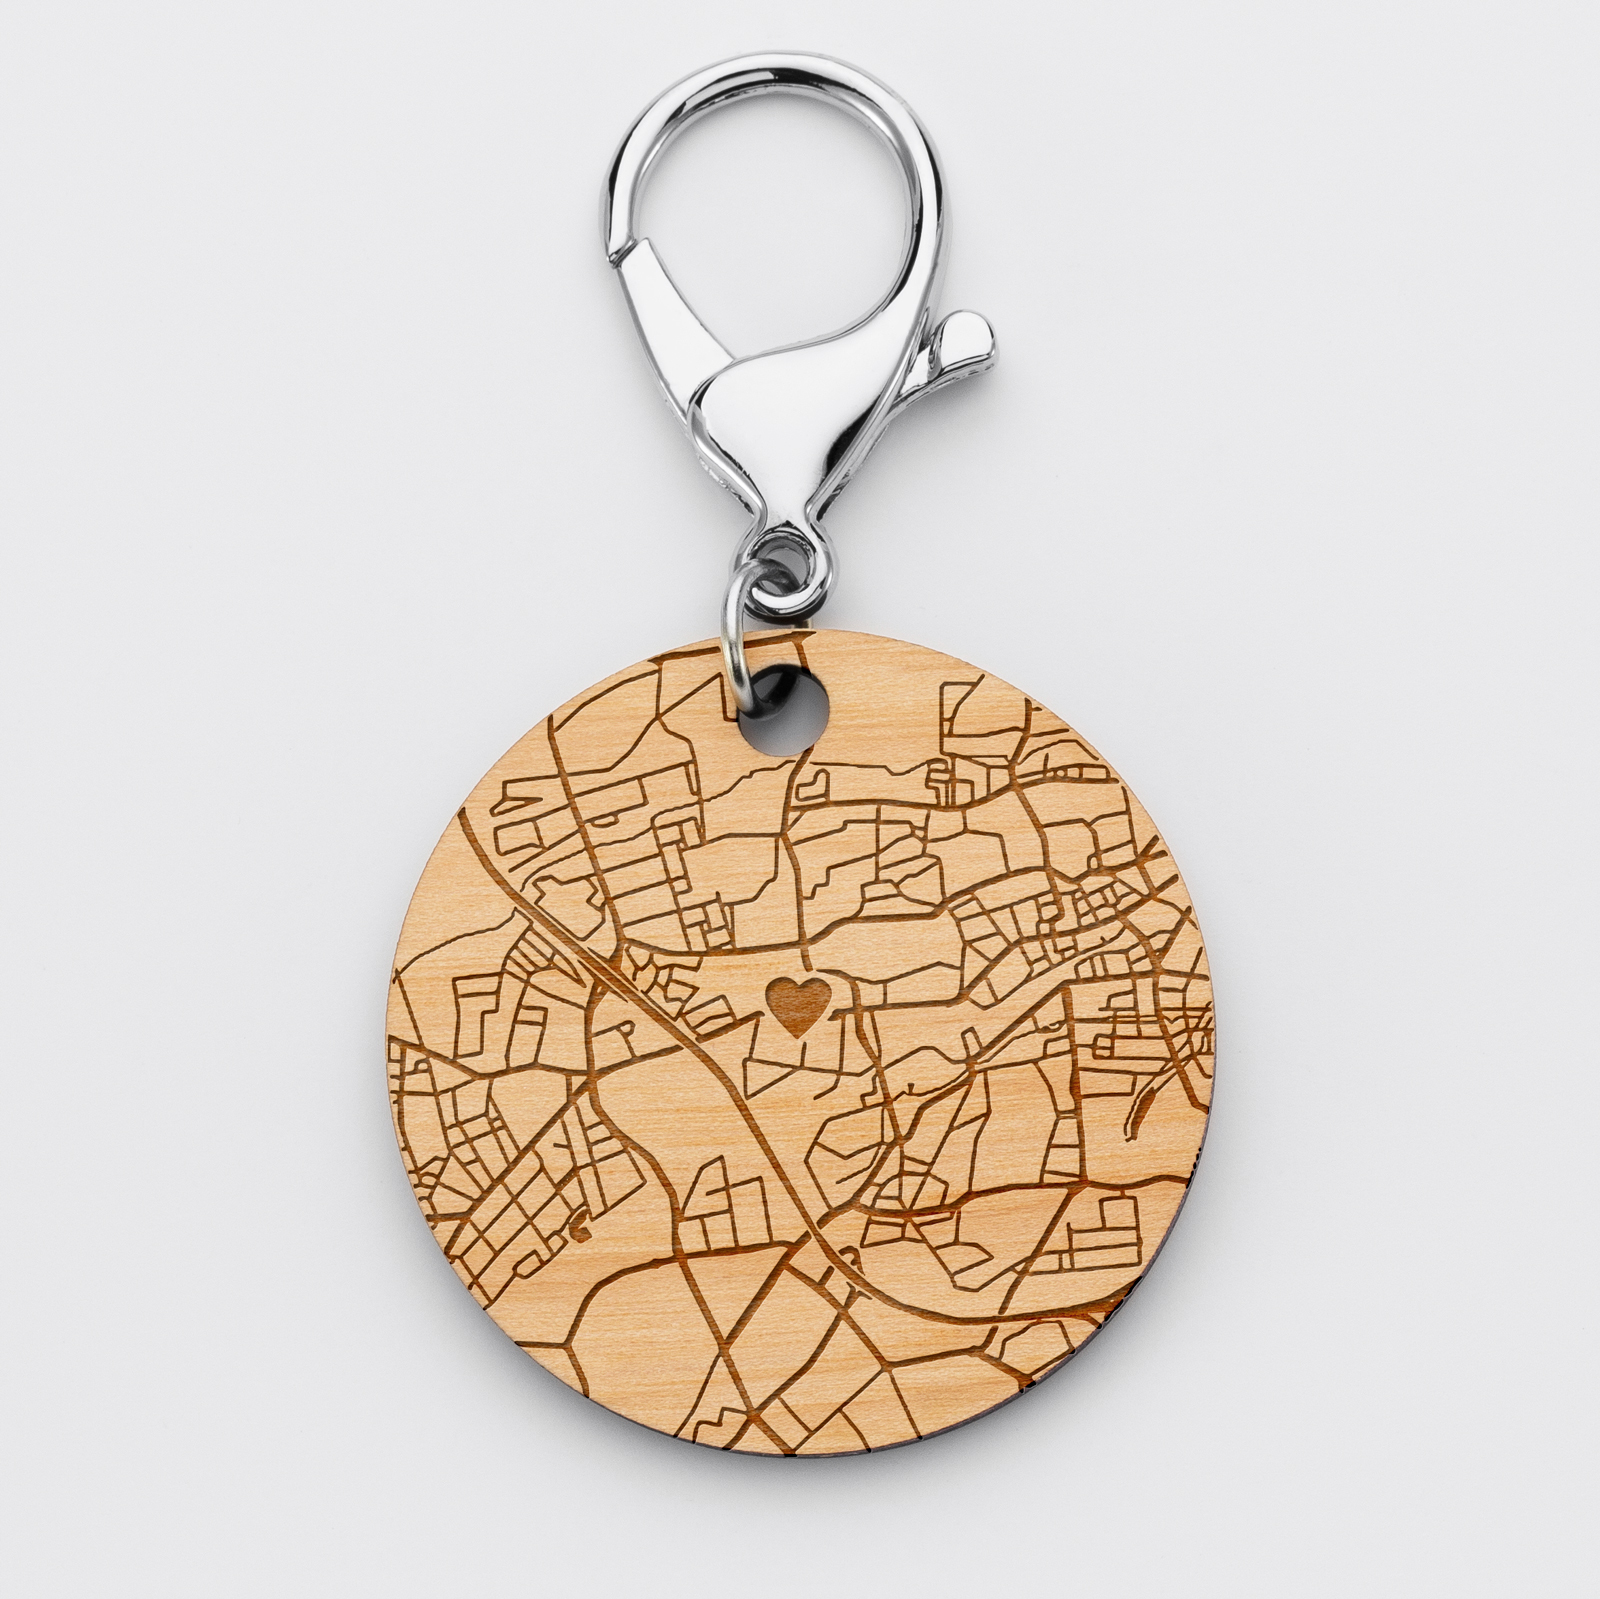 Porte-clés gravé "Géo map" personnalisé bois médaille 50 mm ronde - Cadeau